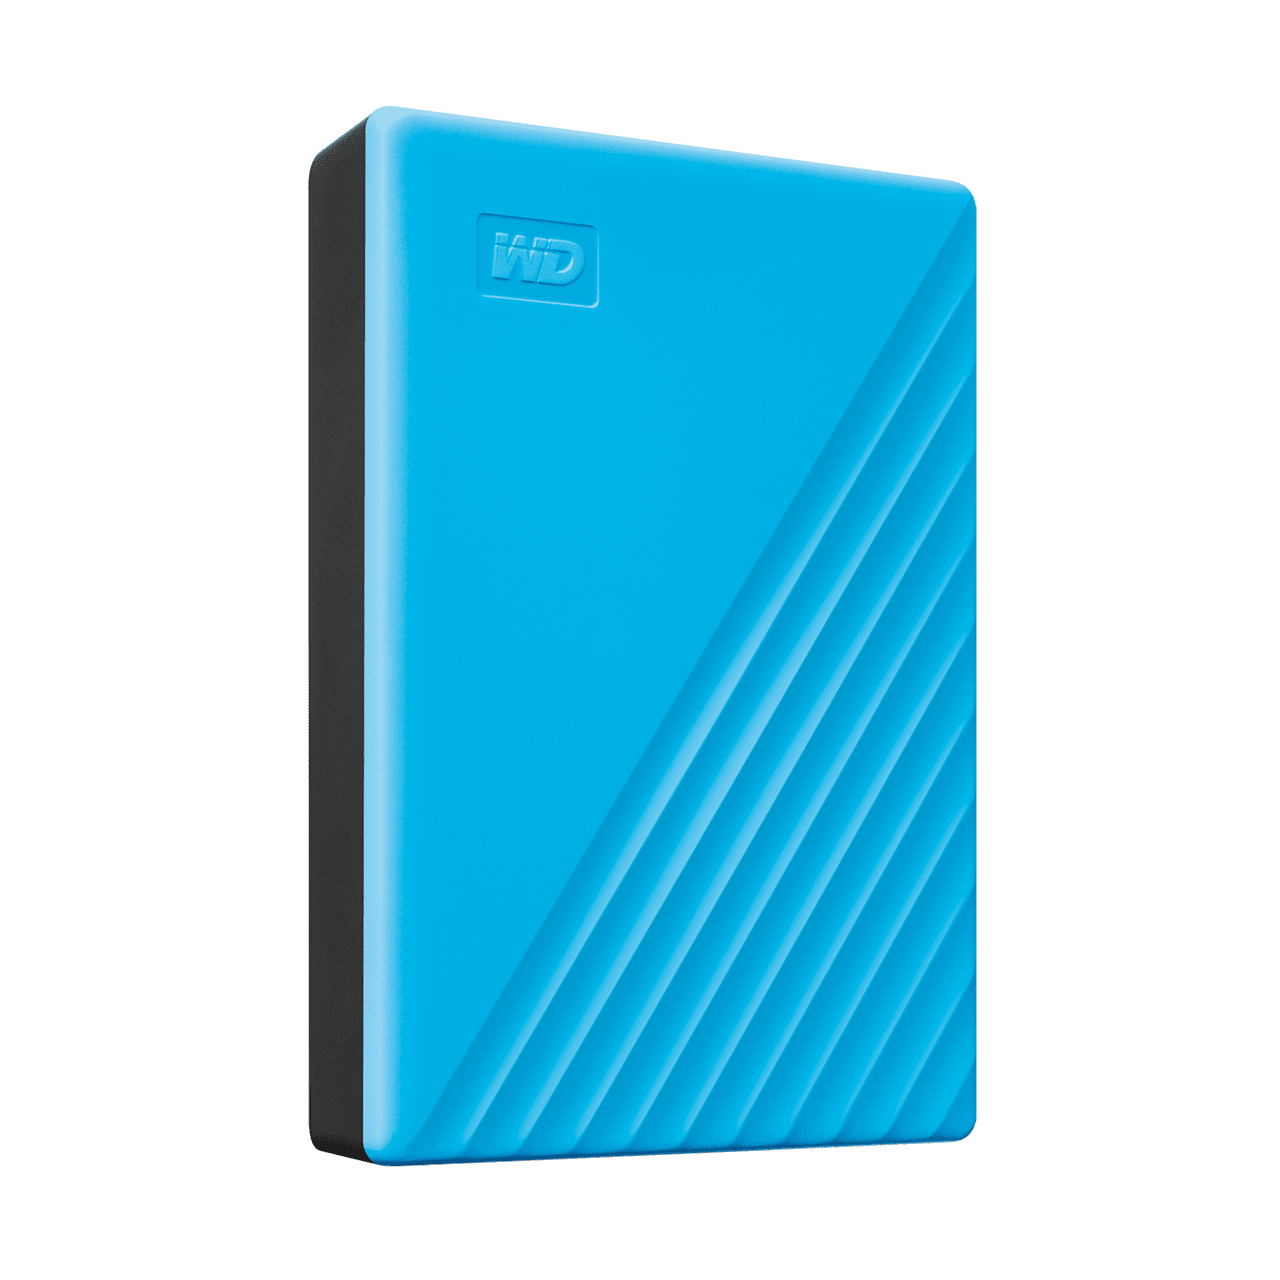 WD MyPassport 1Tb Portable USB 3.2 Hard Drive (Blue)